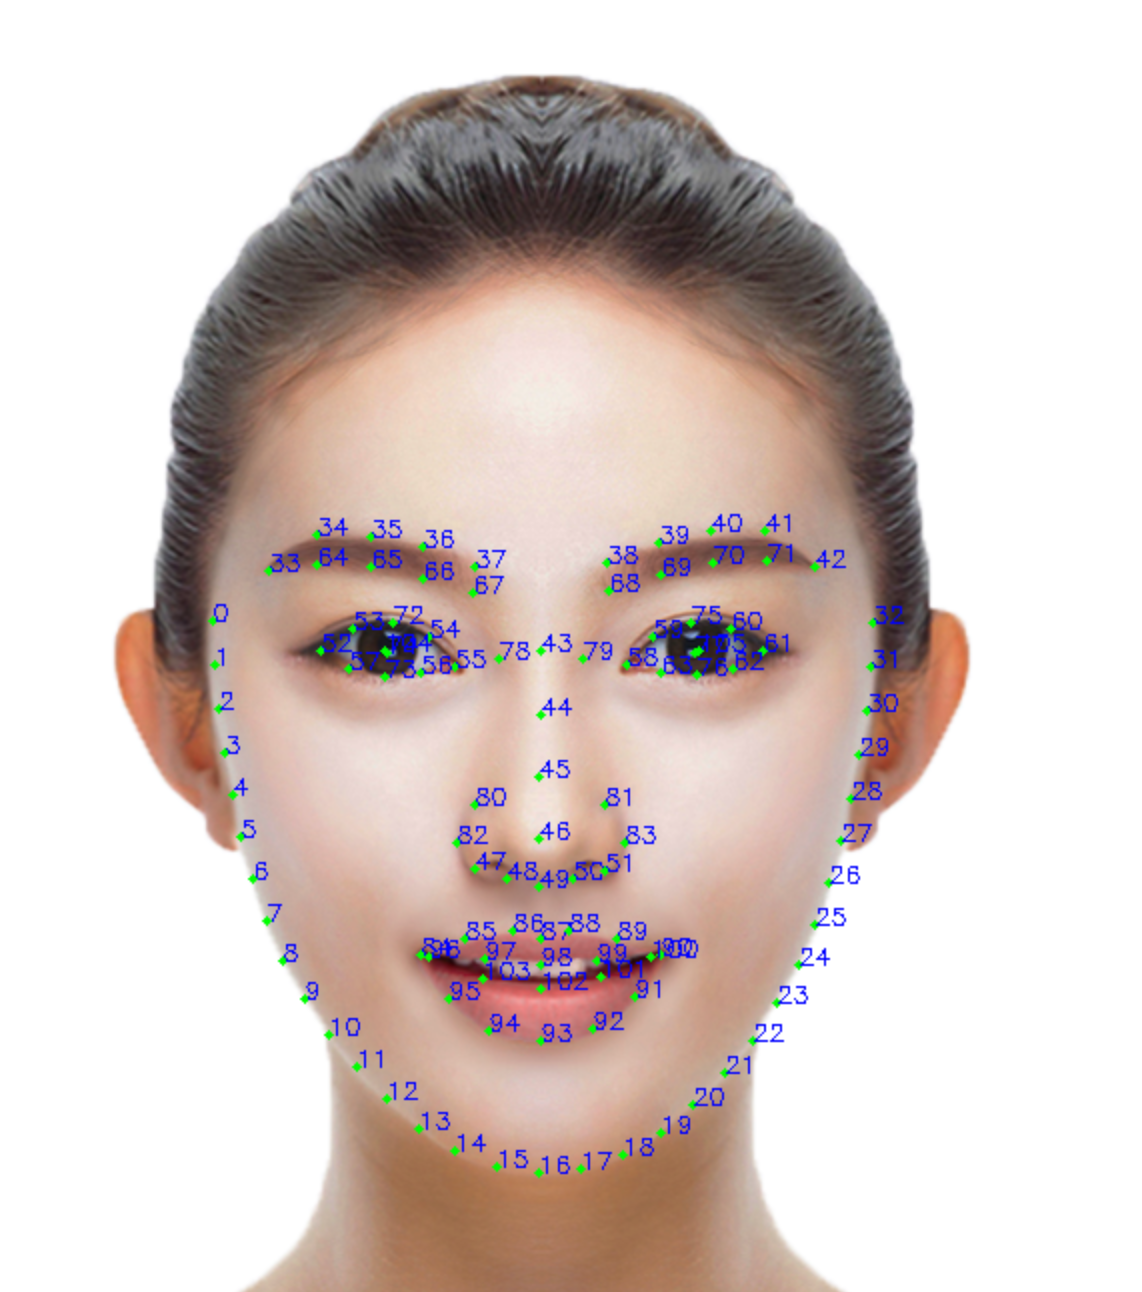 监控系统安装创通福浅析人脸识别应用重点场景有哪些？